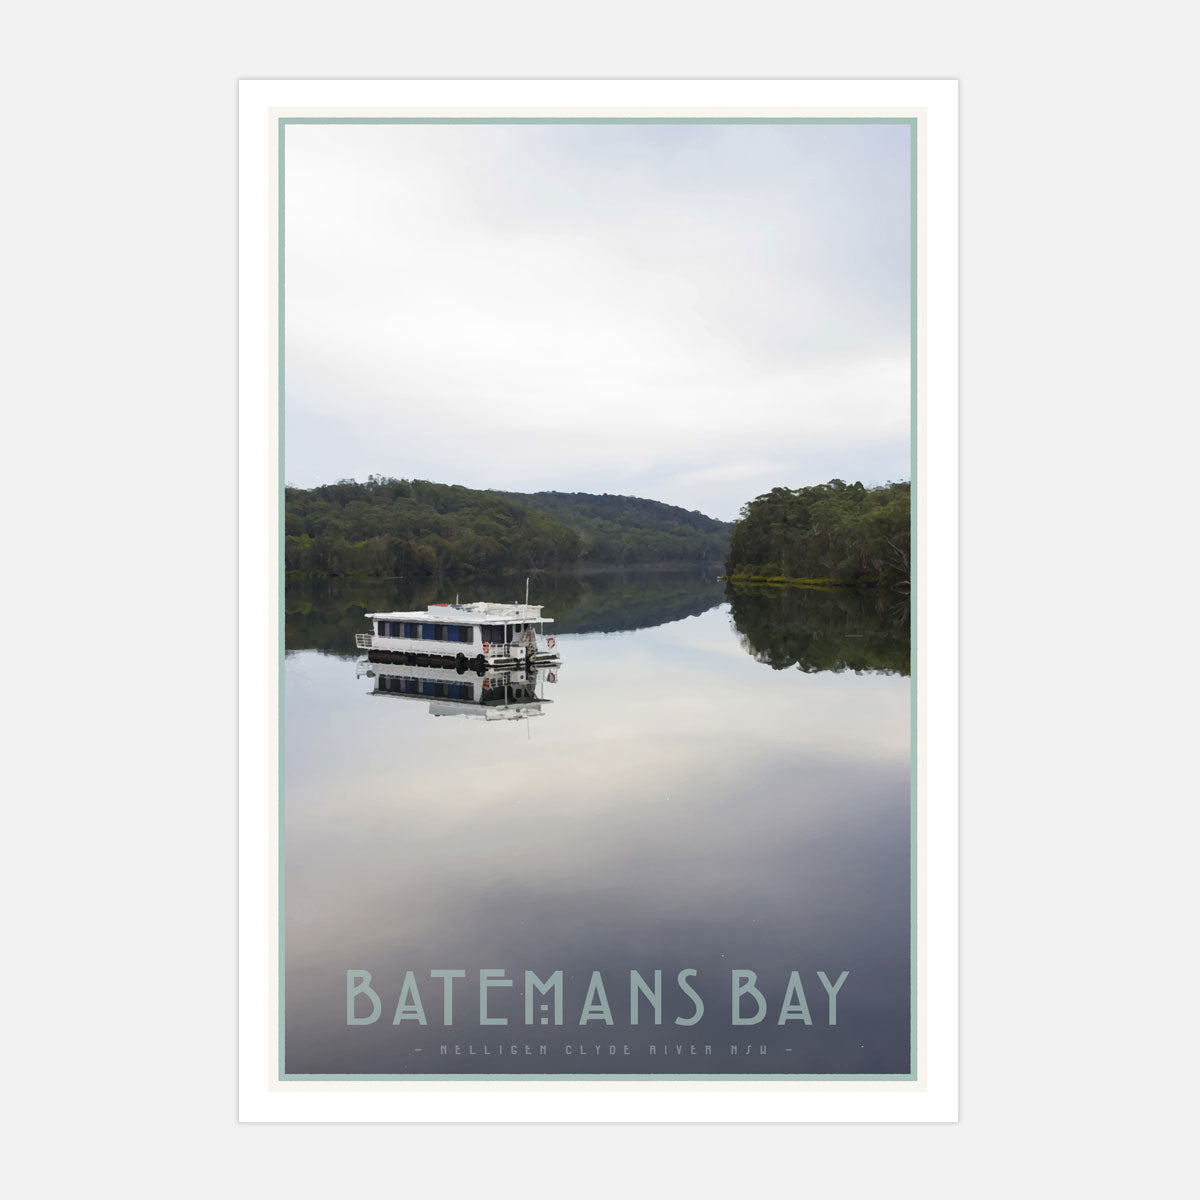 Batemans bay NSW vintage travel print by places we luv